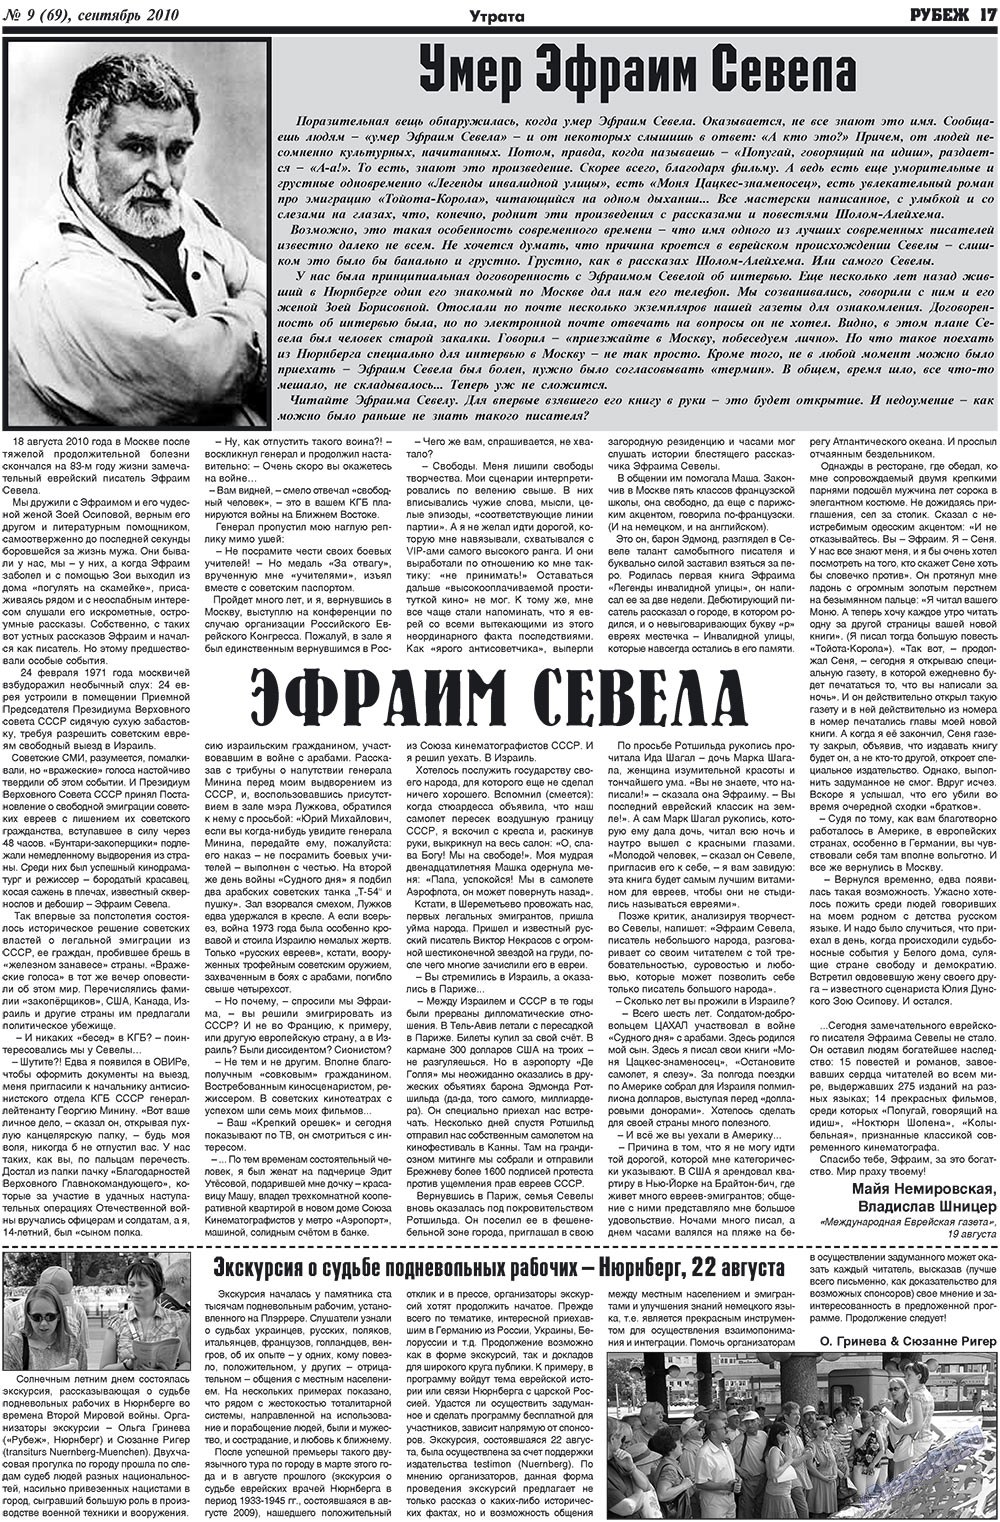 Рубеж (газета). 2010 год, номер 9, стр. 17